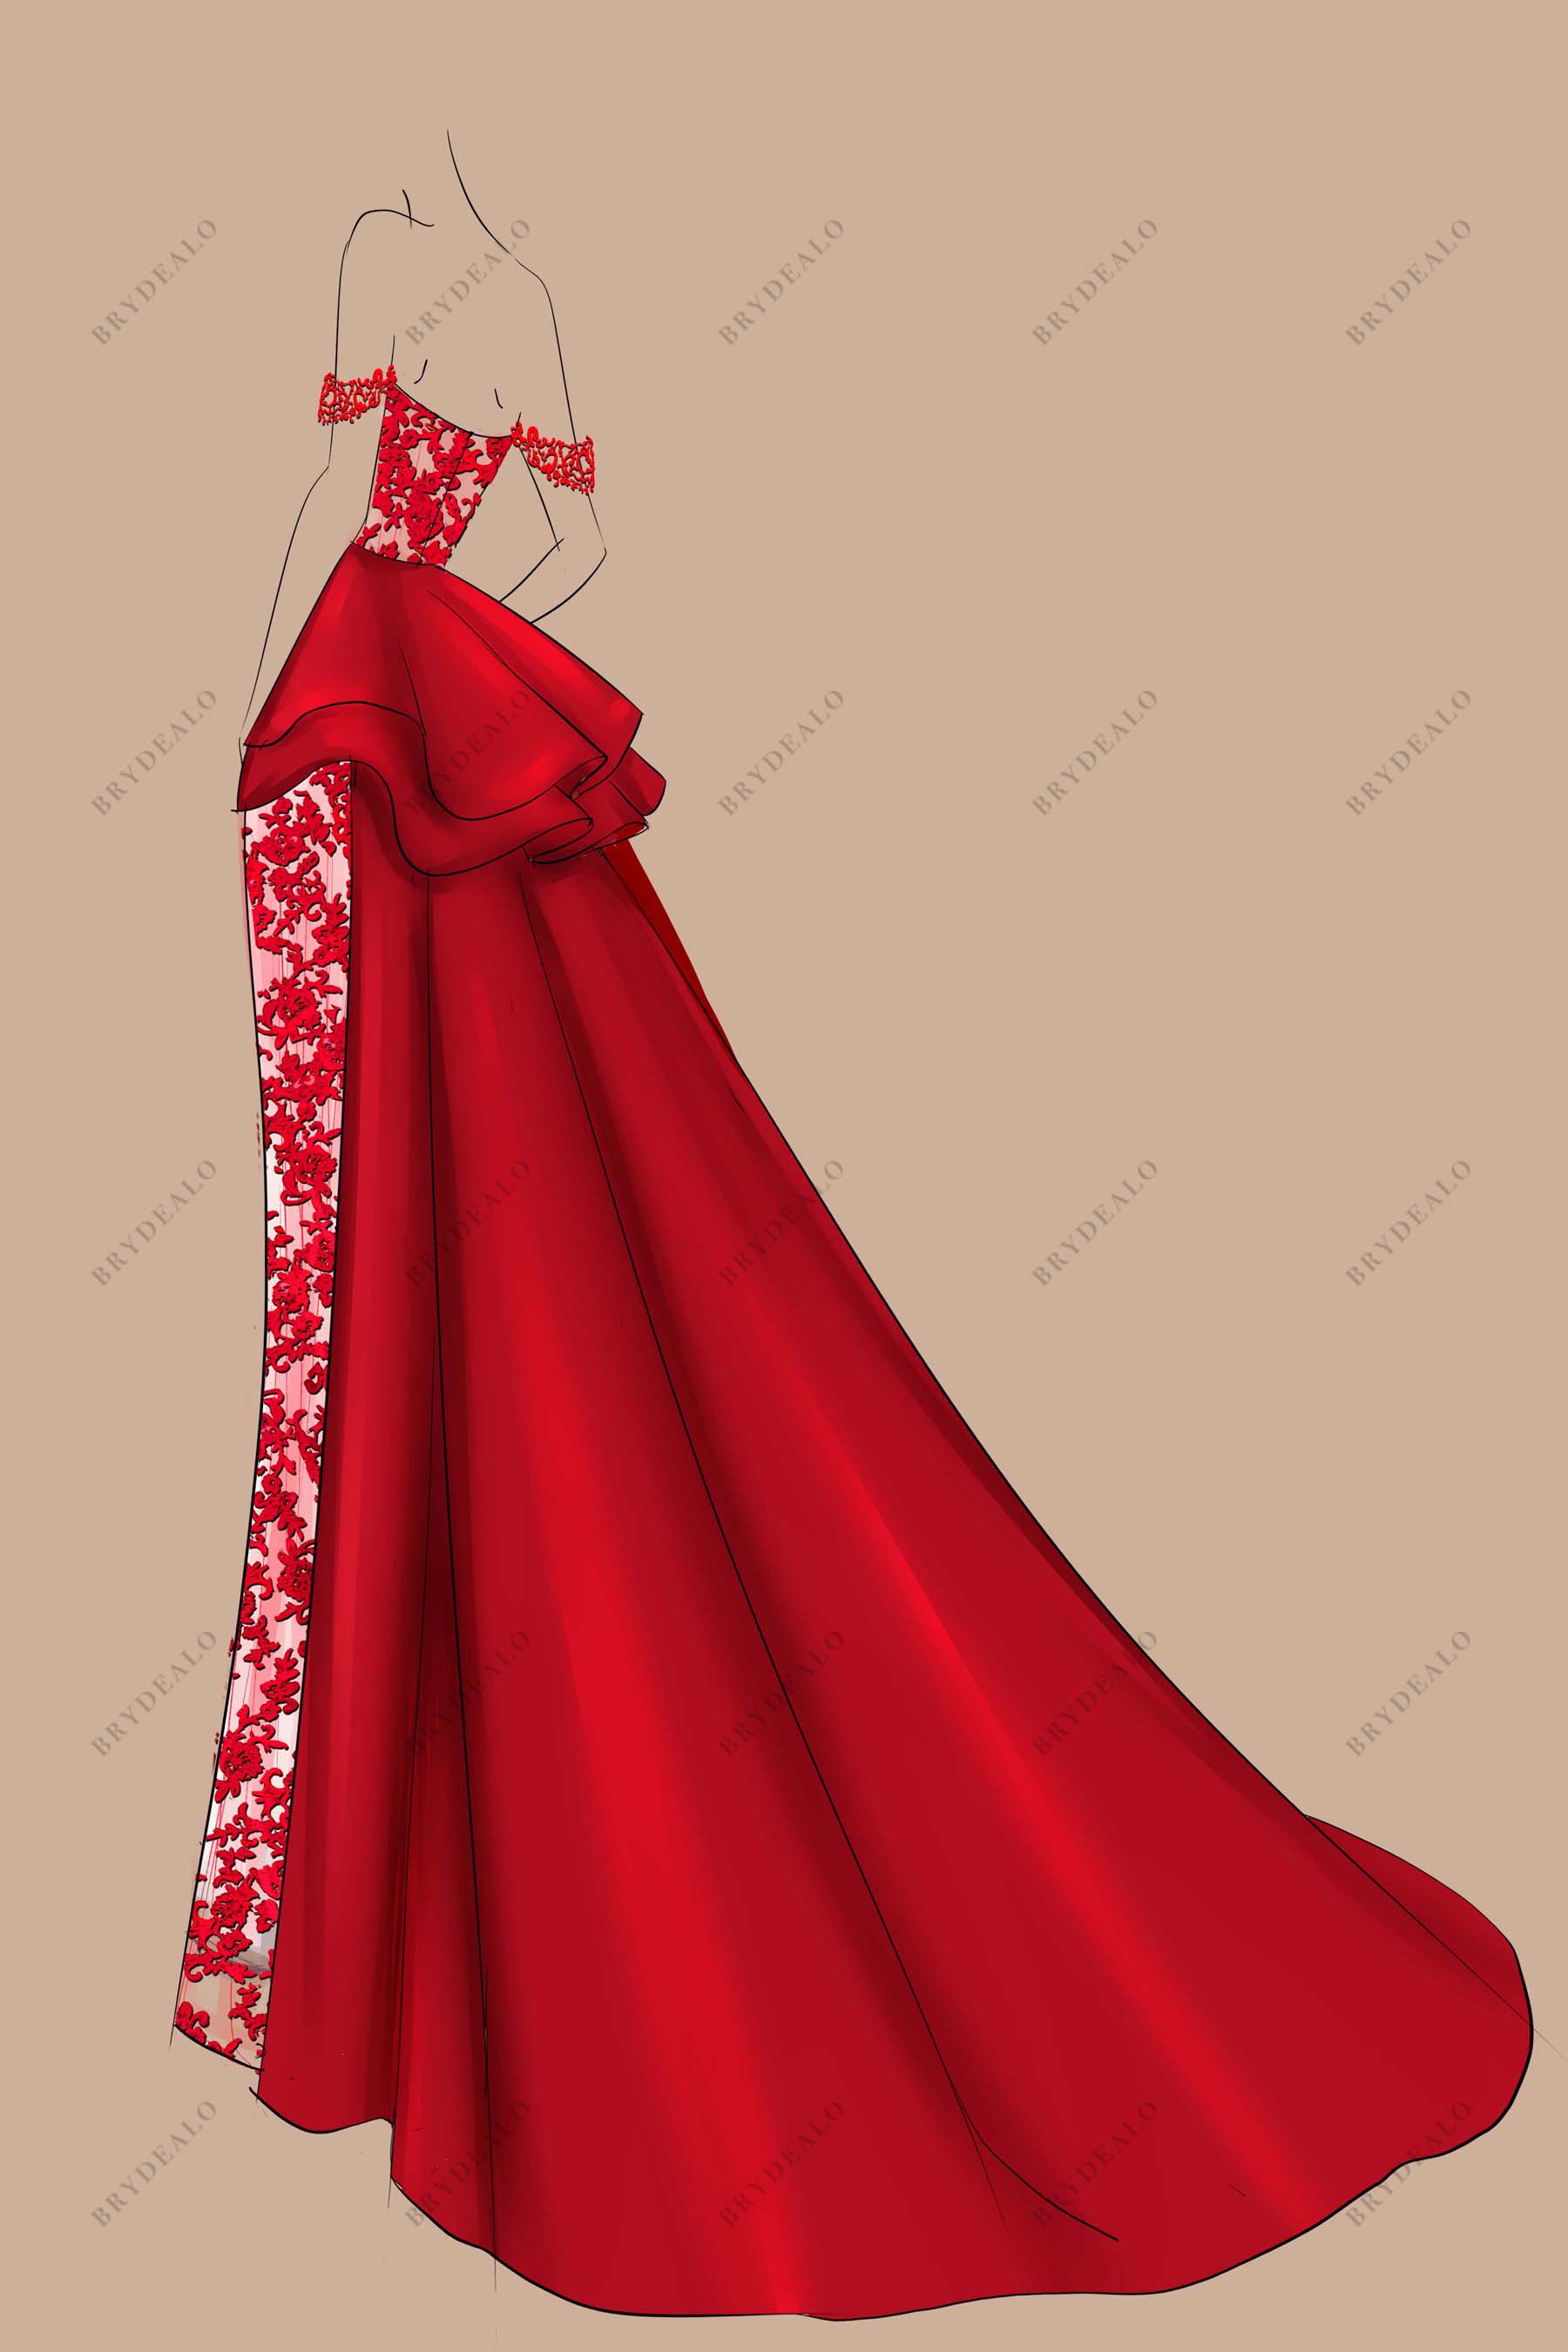 A-line Satin Overskirt Red Off Shoulder Prom Dress Sketch